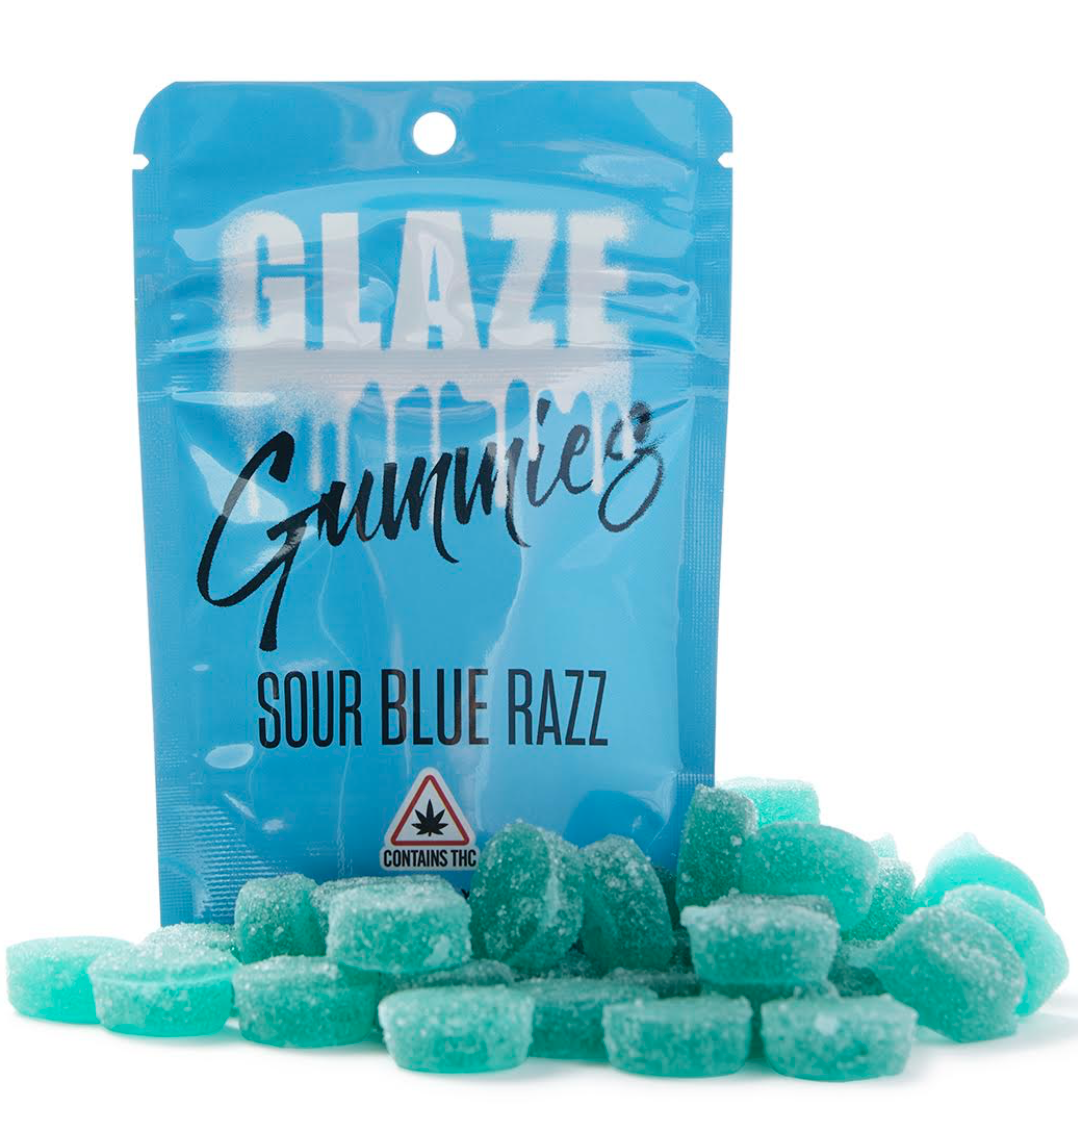 Glaze Sour Blue Razz Gummies